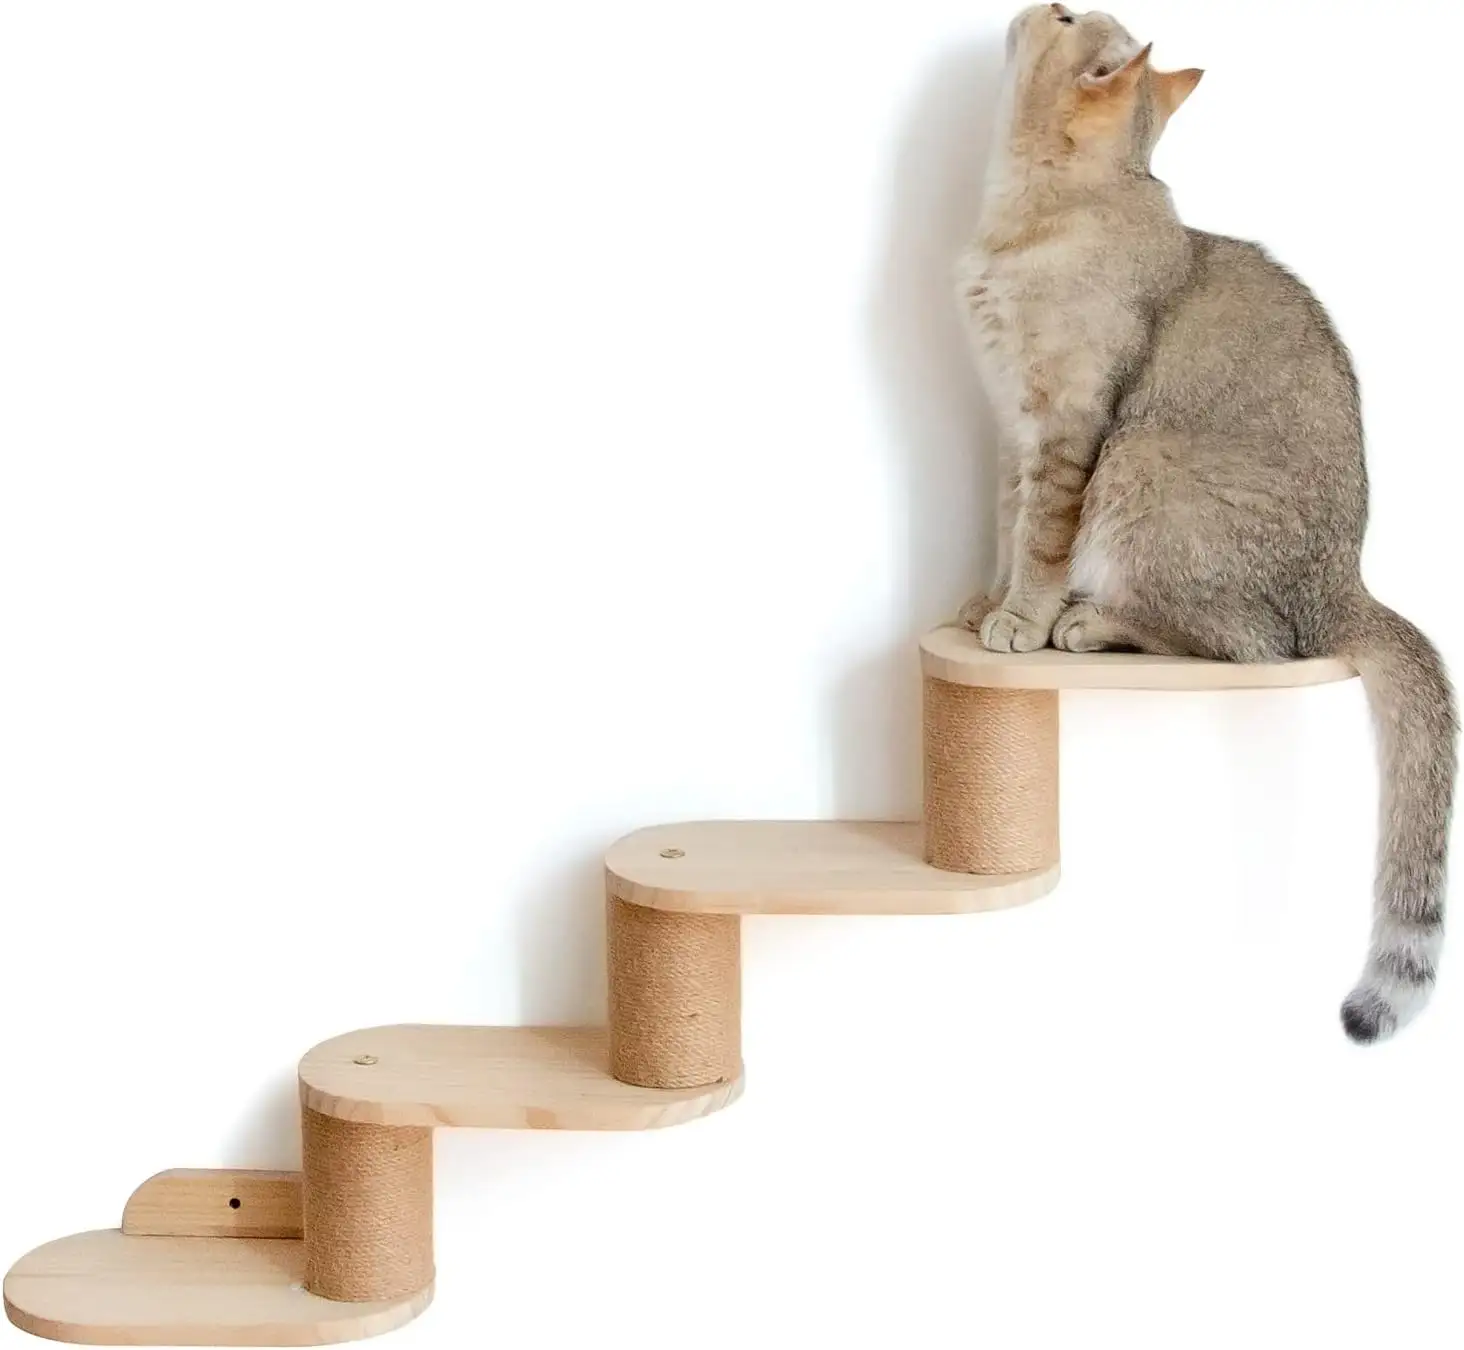 Escalera Combohome para gatos, escaleras de madera para gatos, ideal para rascar y escalar escaleras de madera para gatos